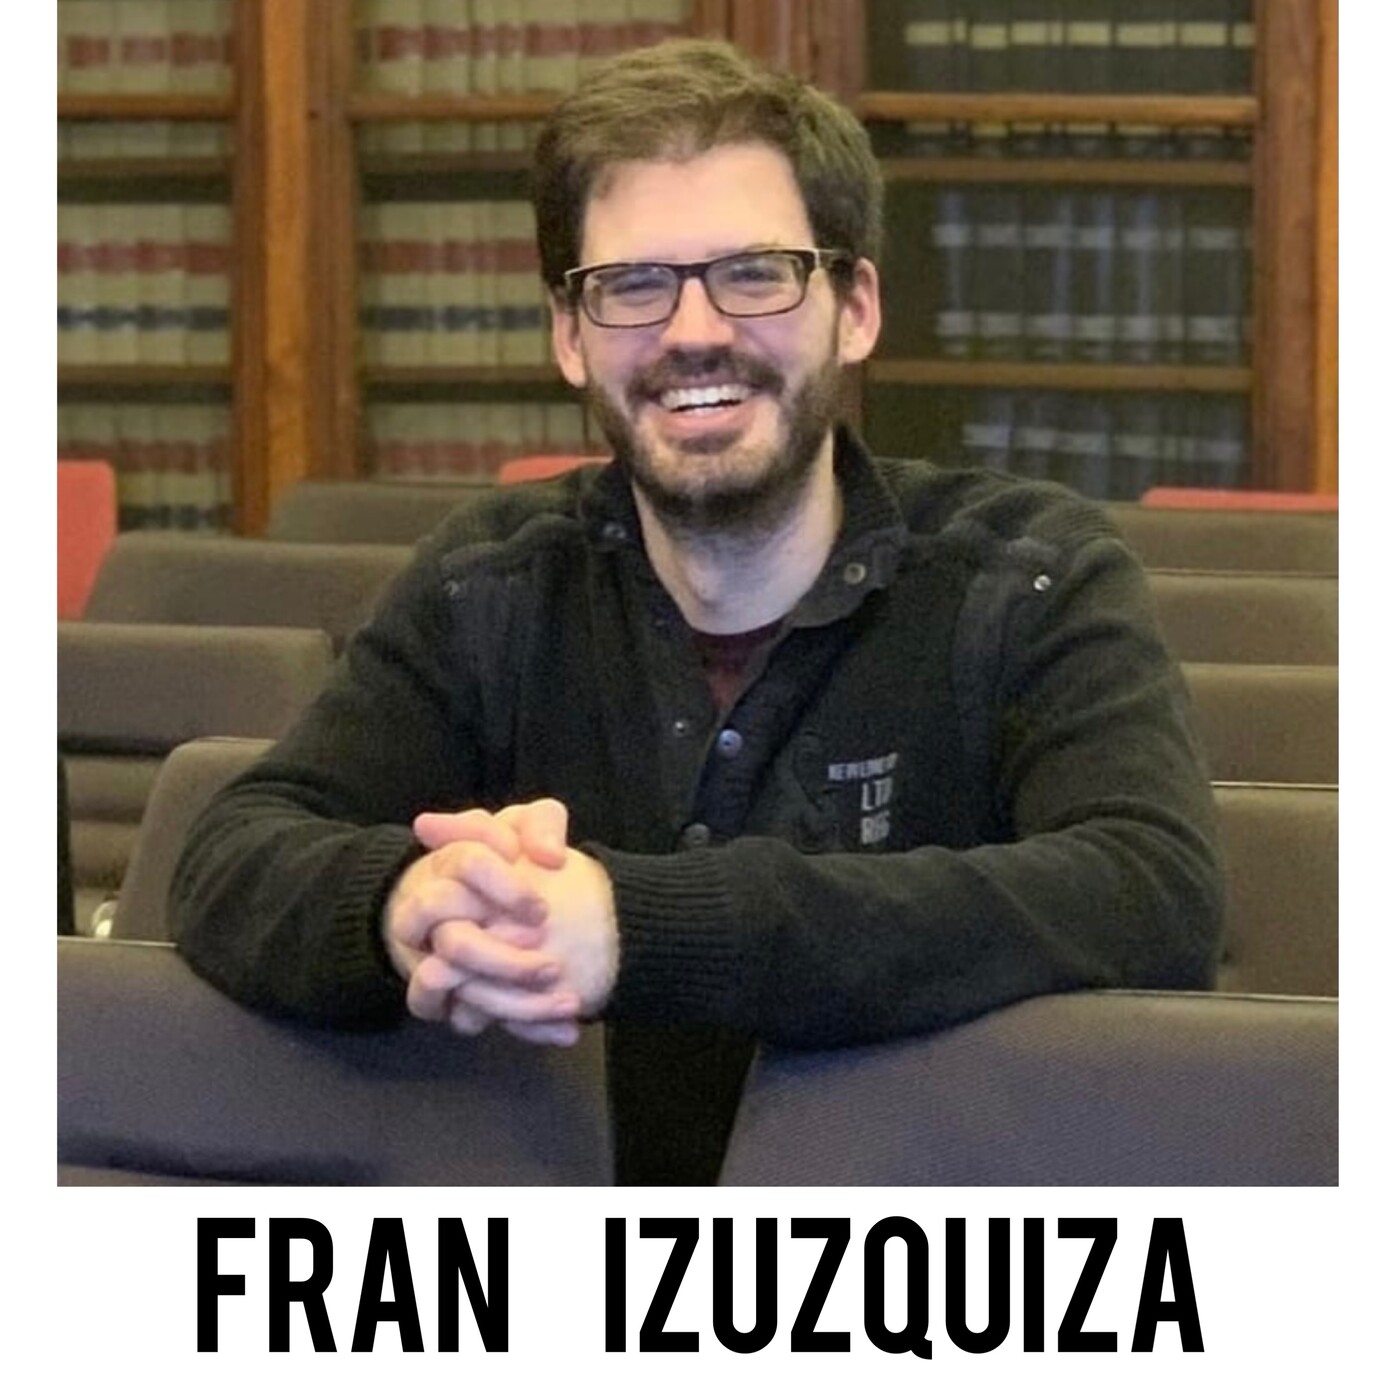 Francisco Izuzquiza - Cómo crear un podcast desde 0 y vivir de ello.